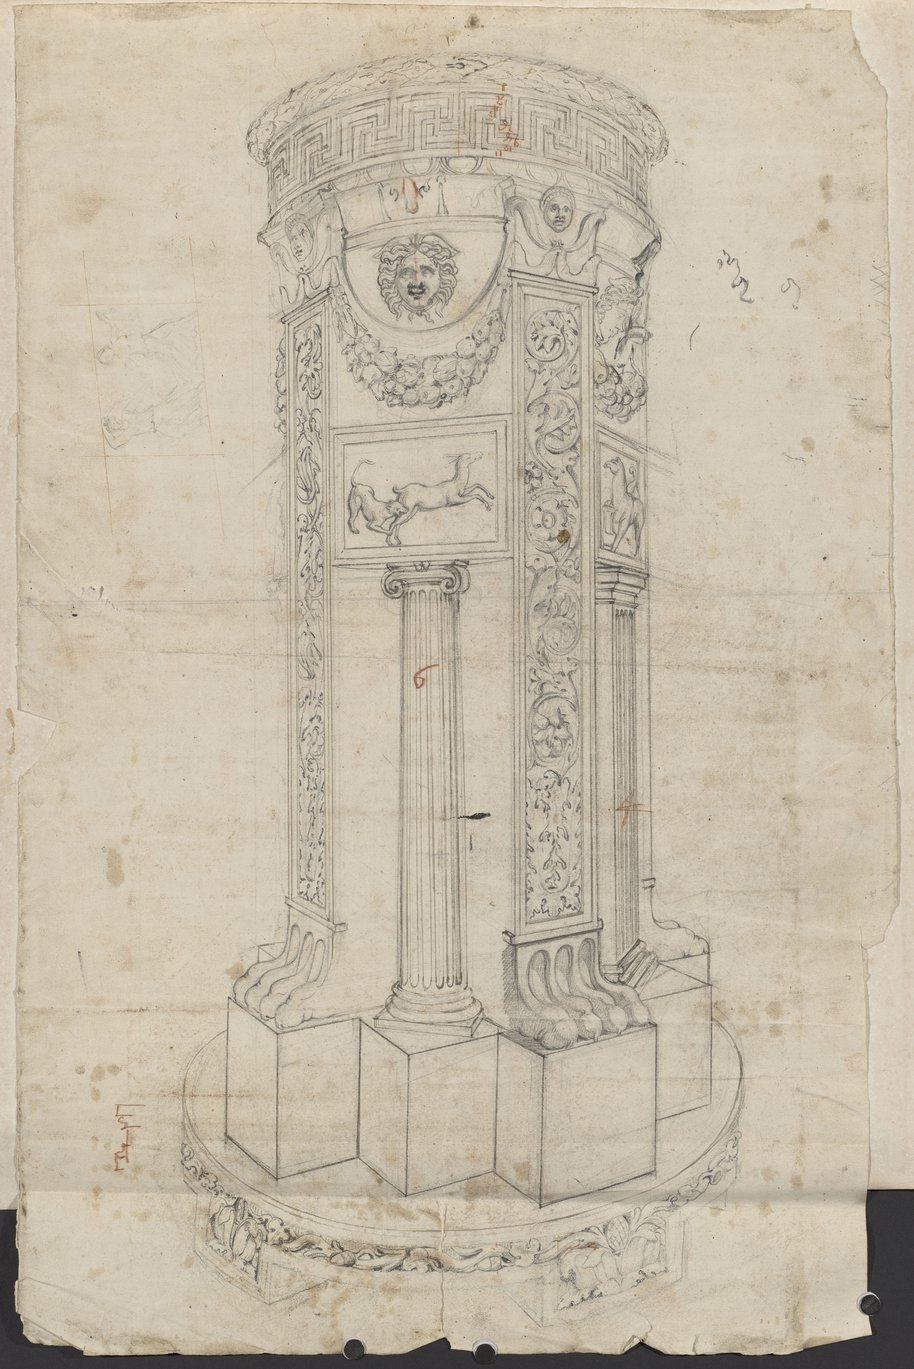 Auflichtaufnahme Tiefenräumliche Feder-, Kreide- und Graphitzeichnung des mit Pilastern und Säulen architektonisch gestalteten sogenannten Albano-Altar